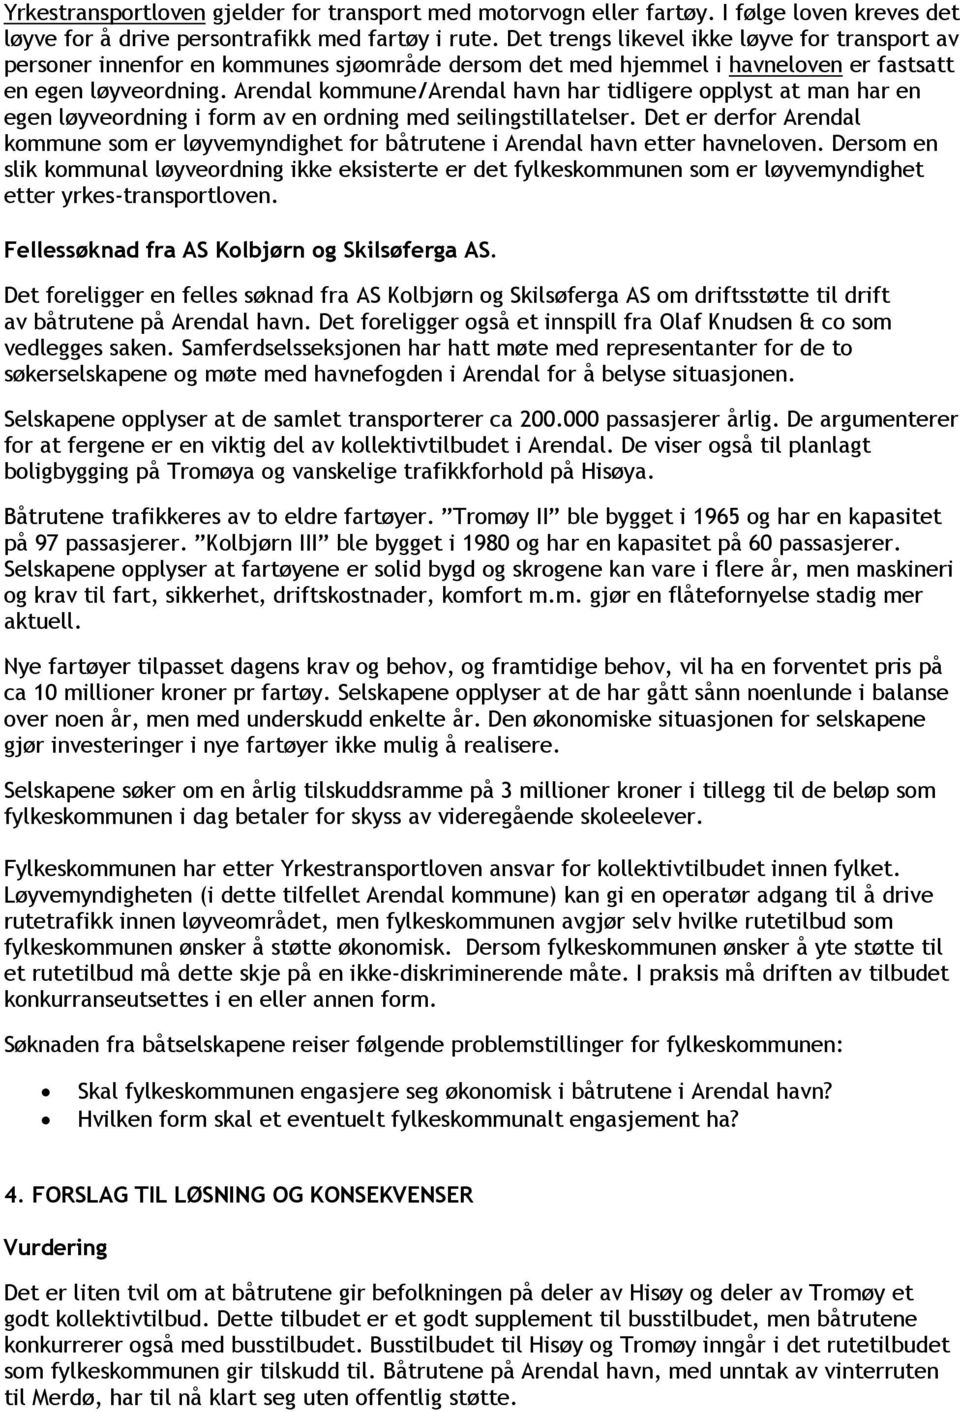 Arendal kommune/arendal havn har tidligere opplyst at man har en egen løyveordning i form av en ordning med seilingstillatelser.